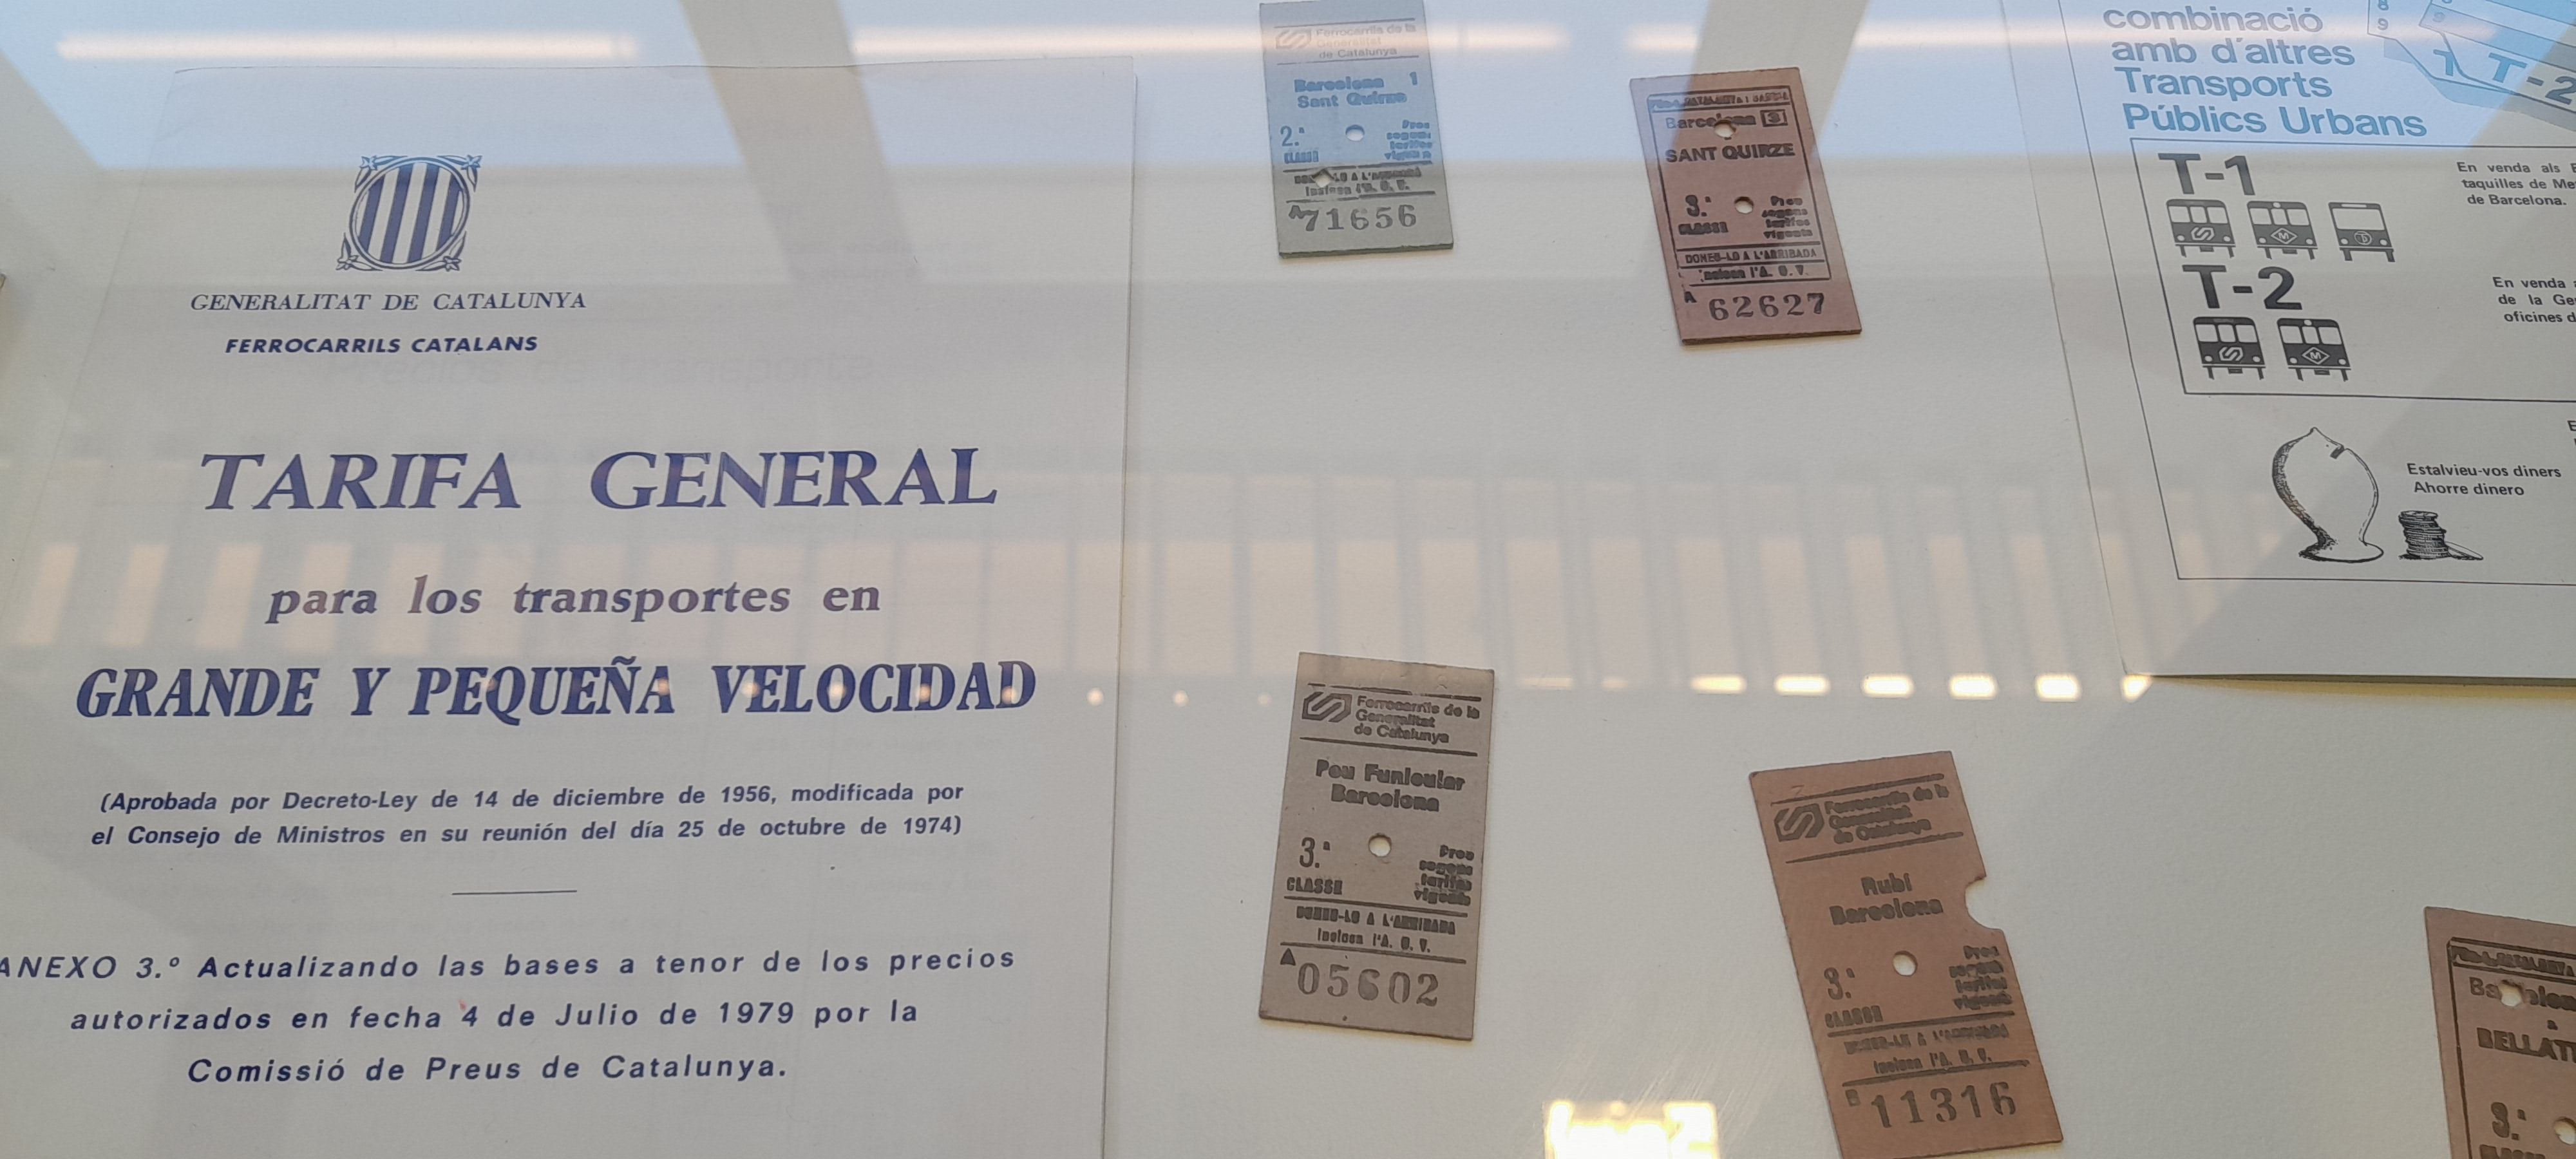 Exposició Quaranta anys de creixement de Ferrocarrils de la Generalitat de Catalunya. FOTO: Cristina Cabasés